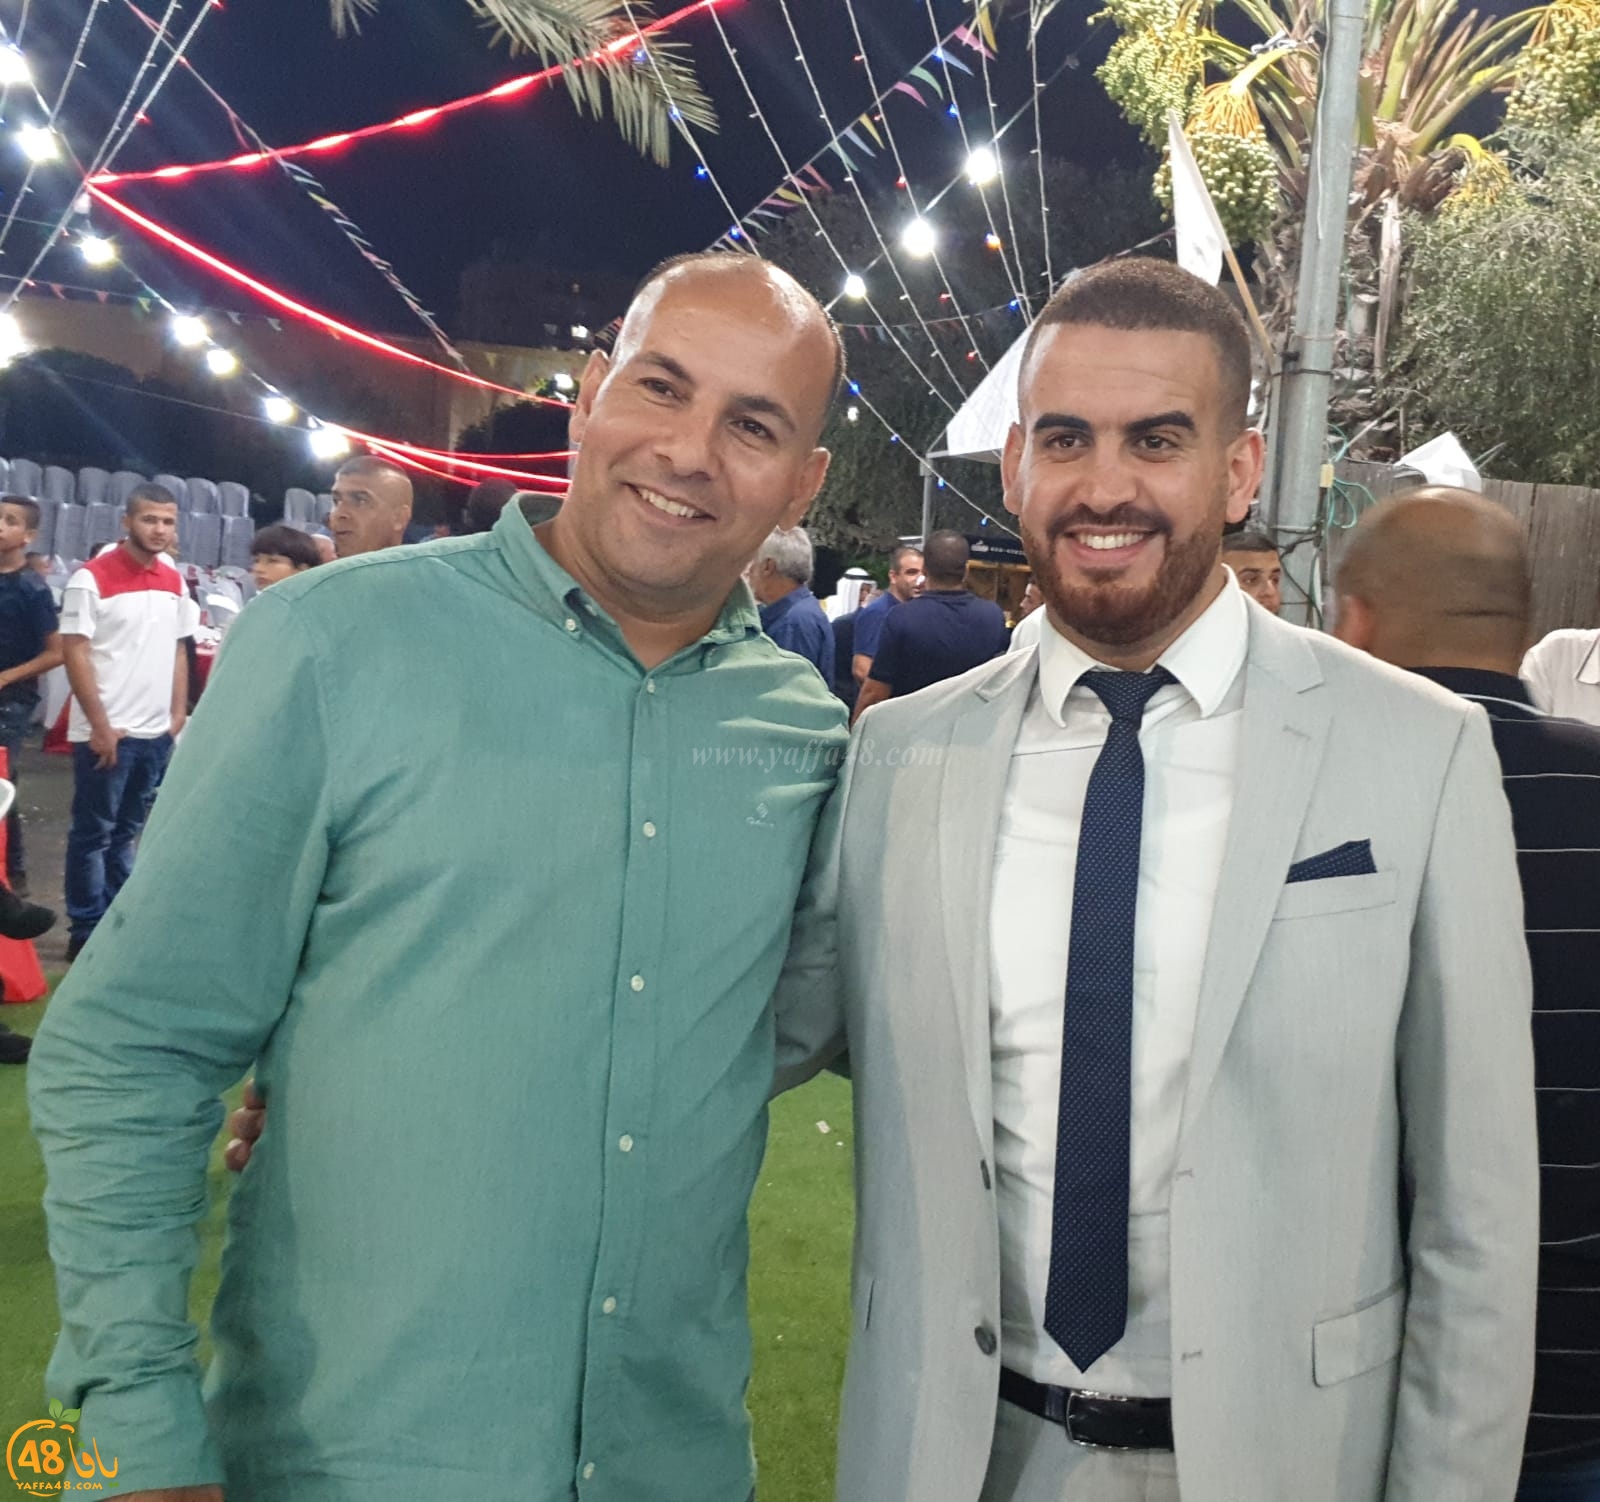   اجتماعيات - بالفيديو: حفل زفاف العريس سالم نايف ابو صويص في الرملة 